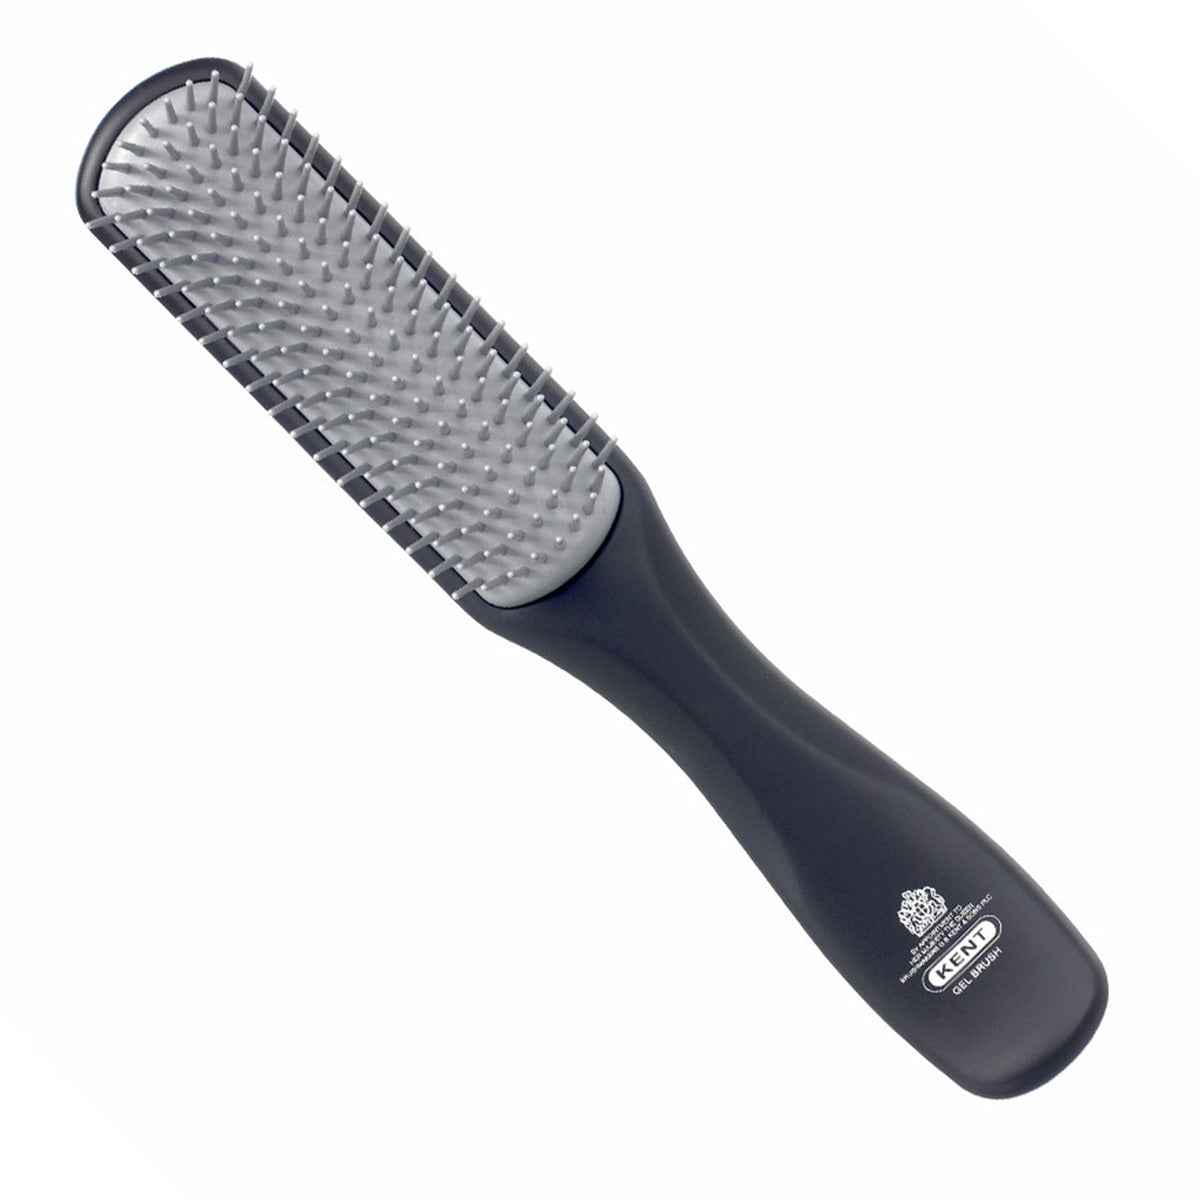 Primary image of Men's Gel Styler Hairbrush - KFM3